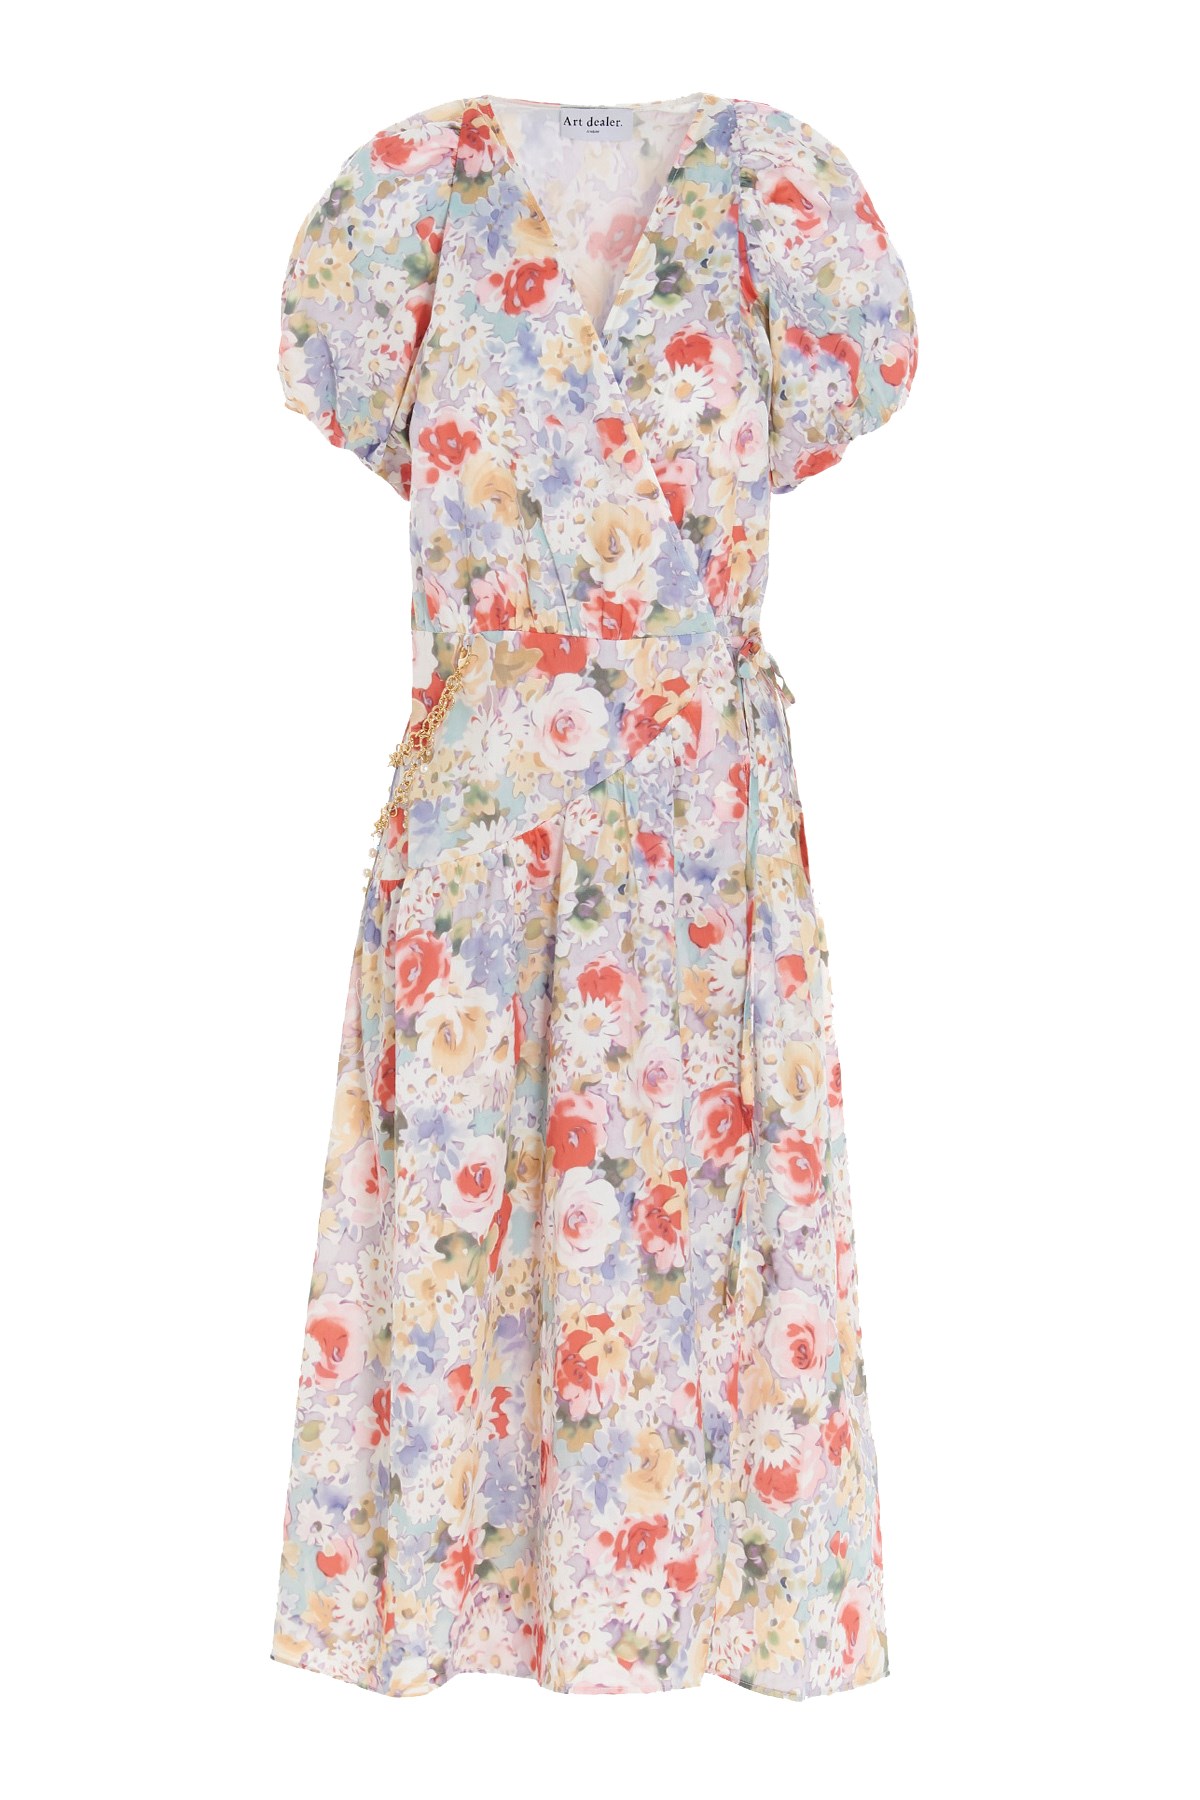 ART DEALER Kleid Aus Baumwolle Mit Blumenprint